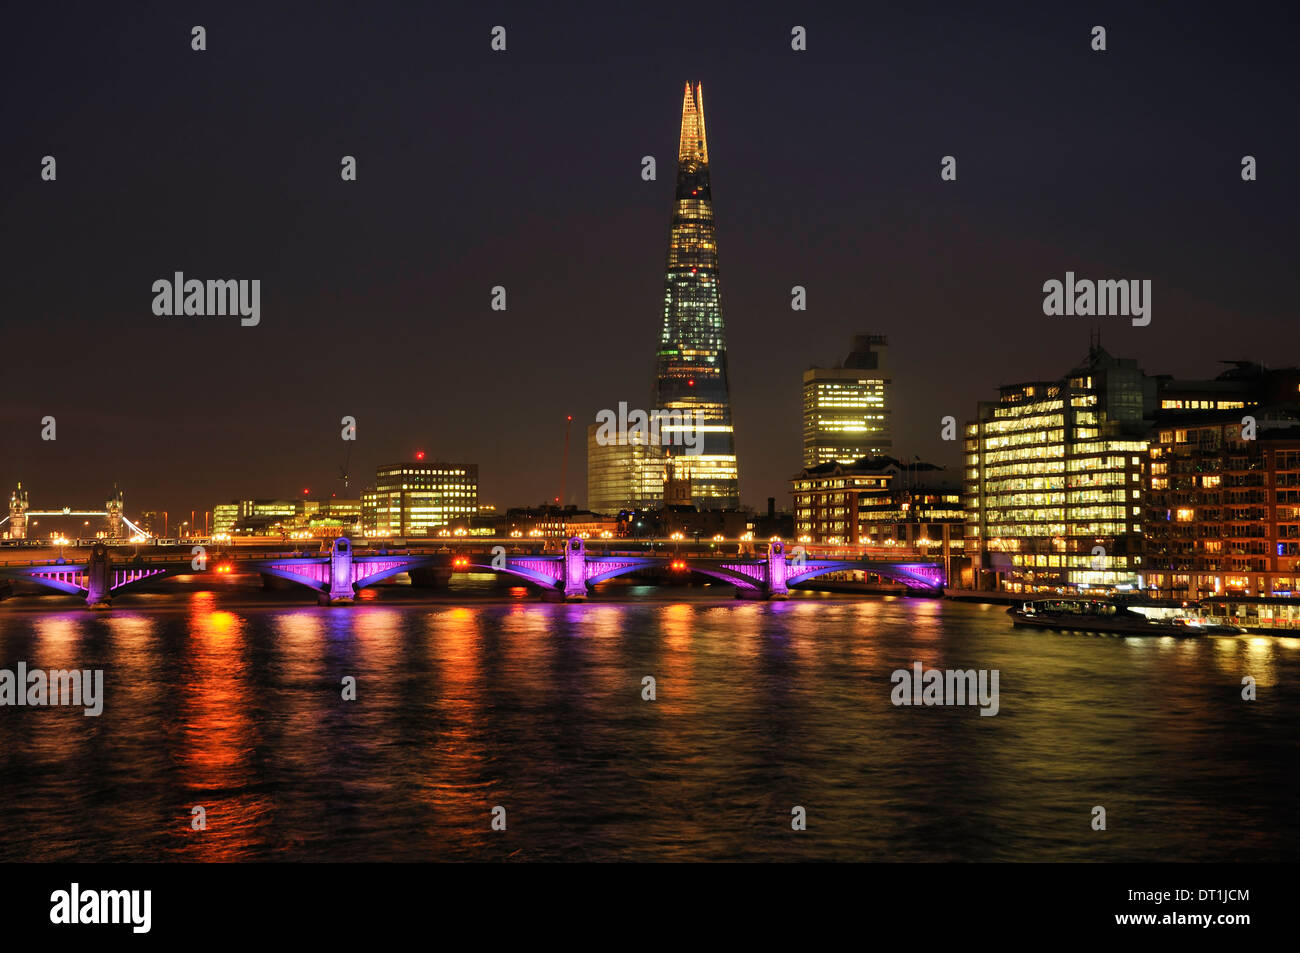 La South Bank, Londres, Royaume-Uni, la nuit, illuminée, avec le Shard et le pont Southwark Banque D'Images